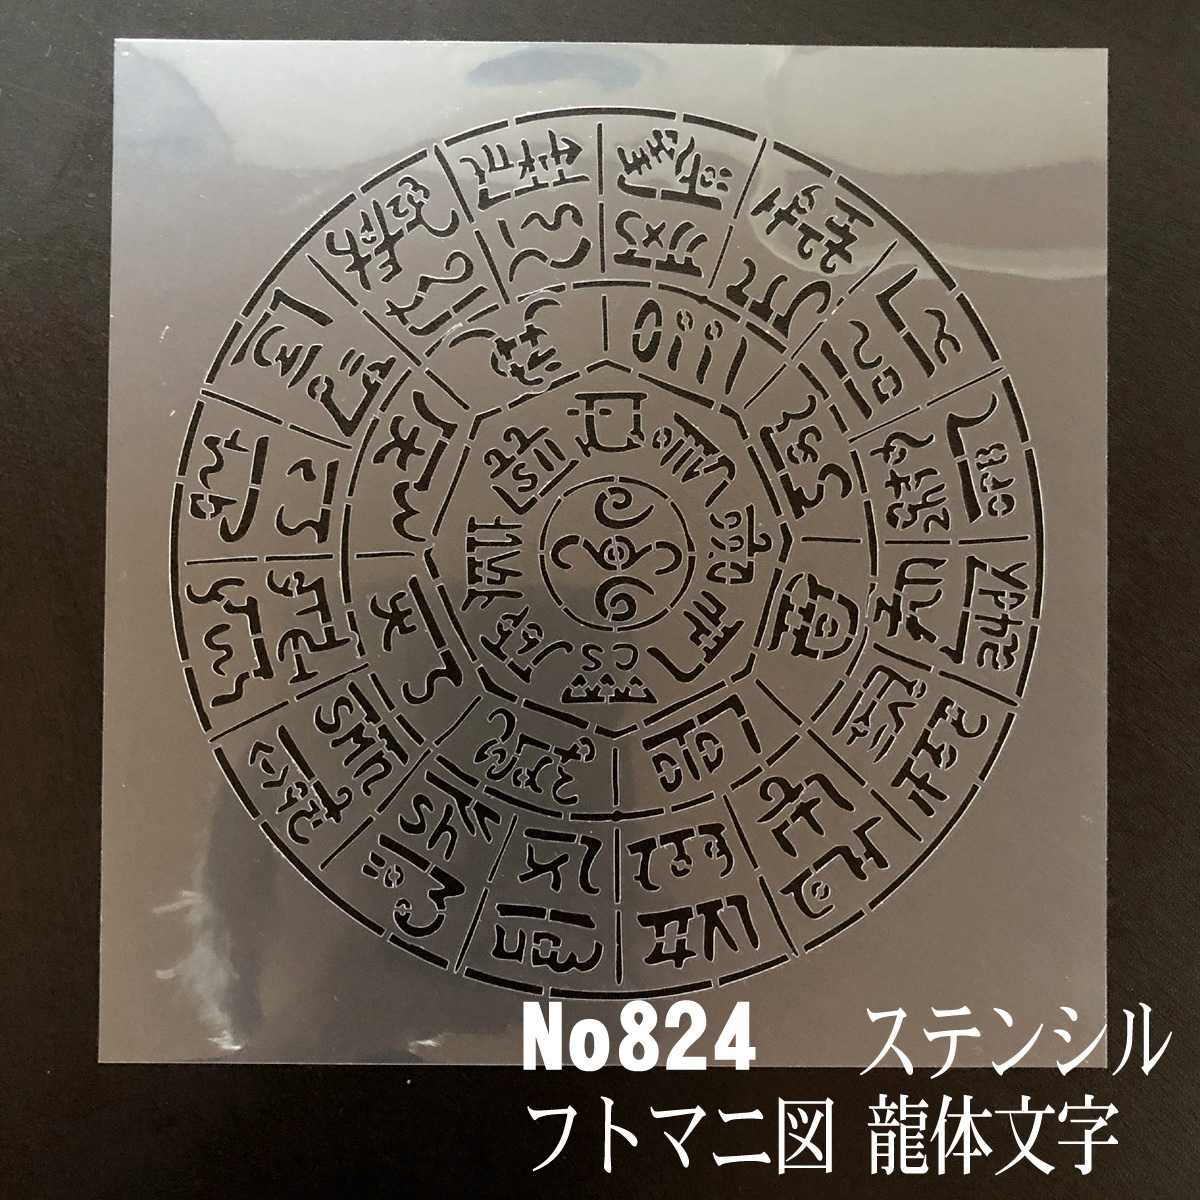 NO824 дракон body знак ftomani map stencil сиденье выкройки дизайн 